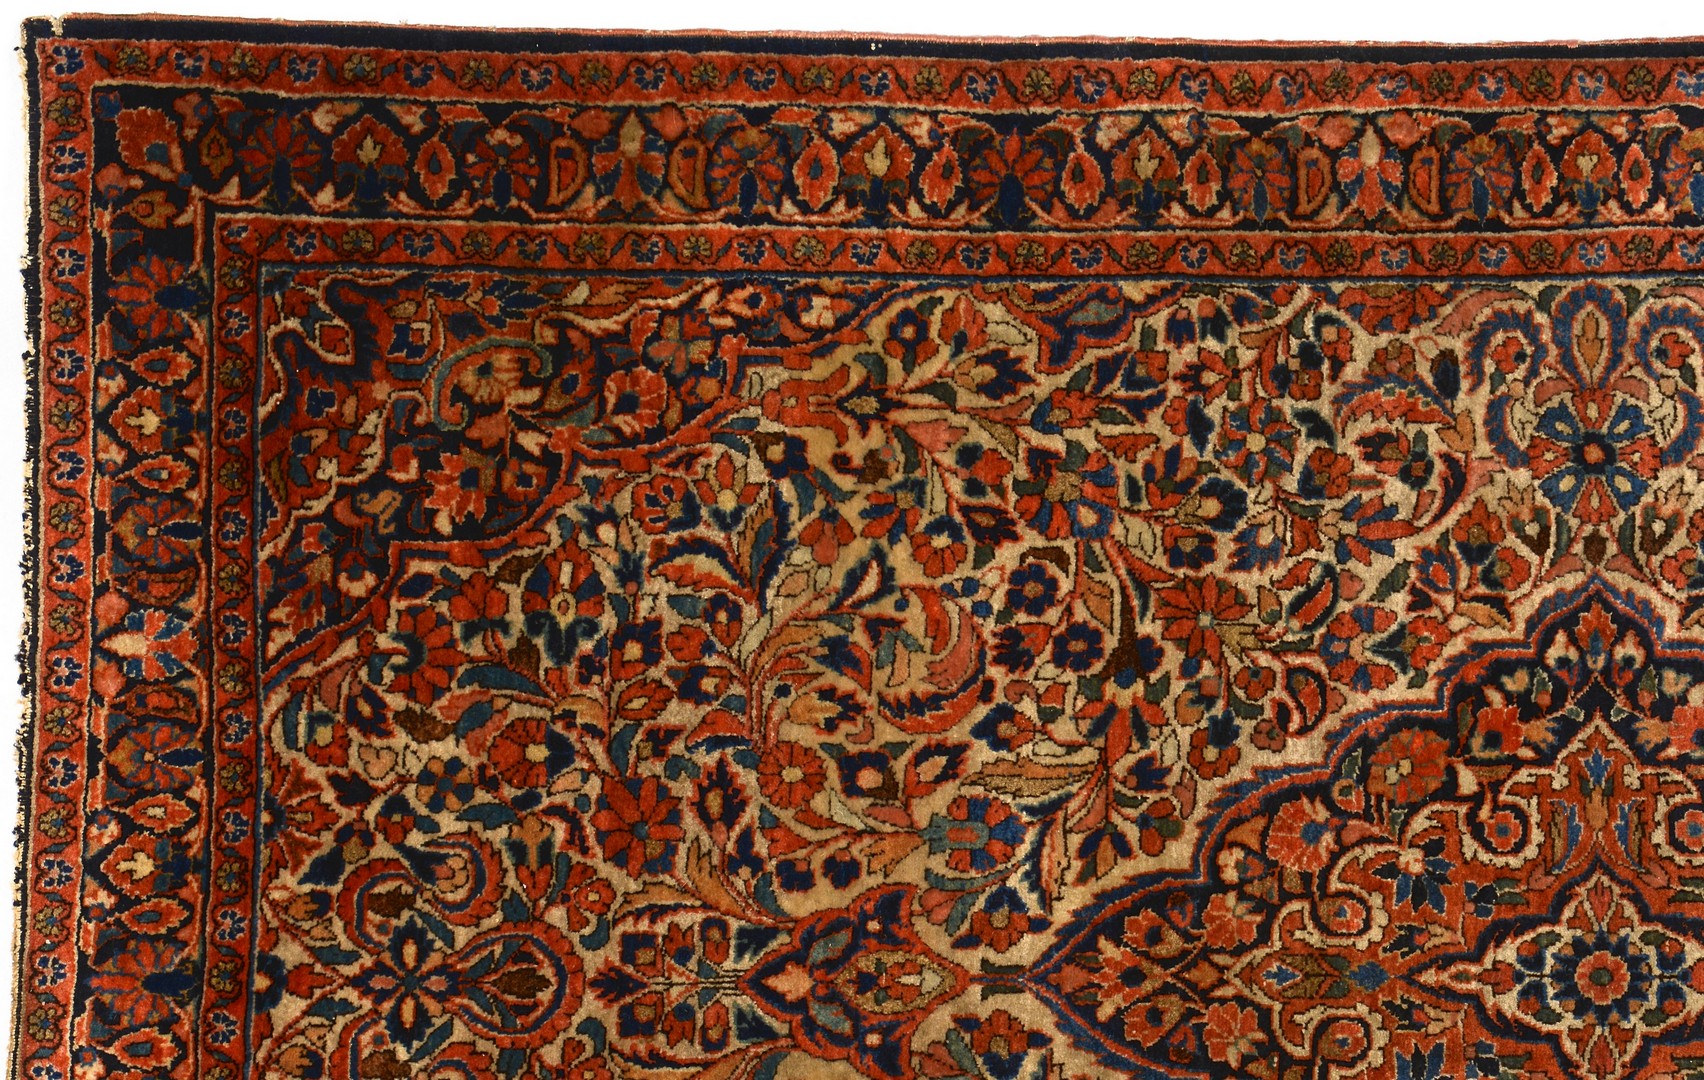 Lot 497: Persian Kashan area rug